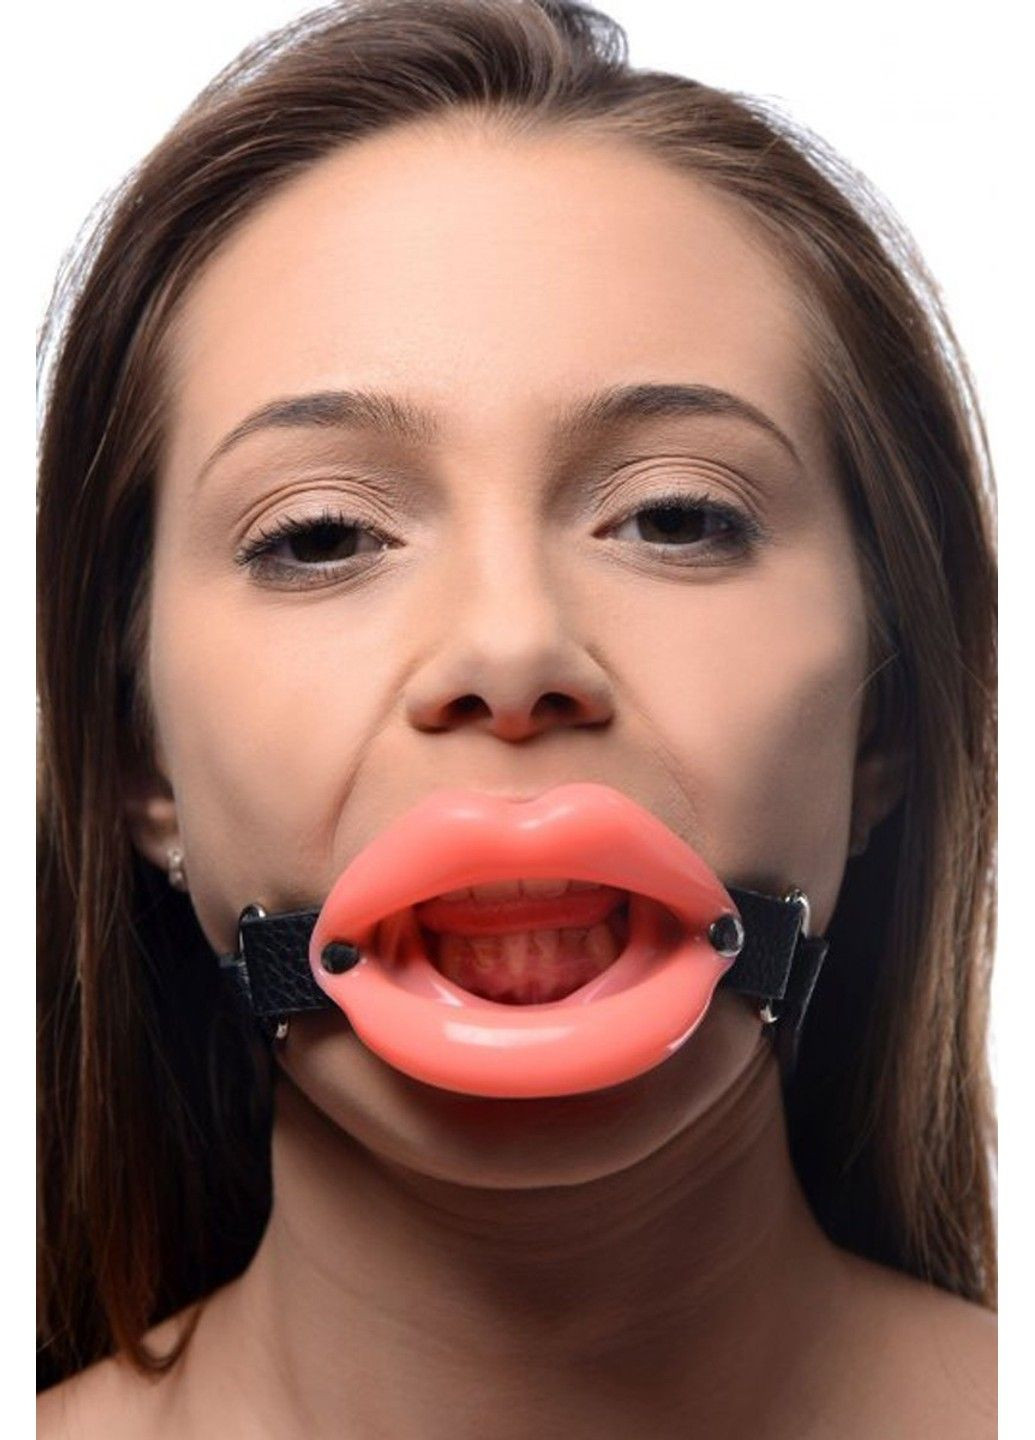 Расширитель для рта в форме губ Sissy Mond Gag Master Series (289783573)